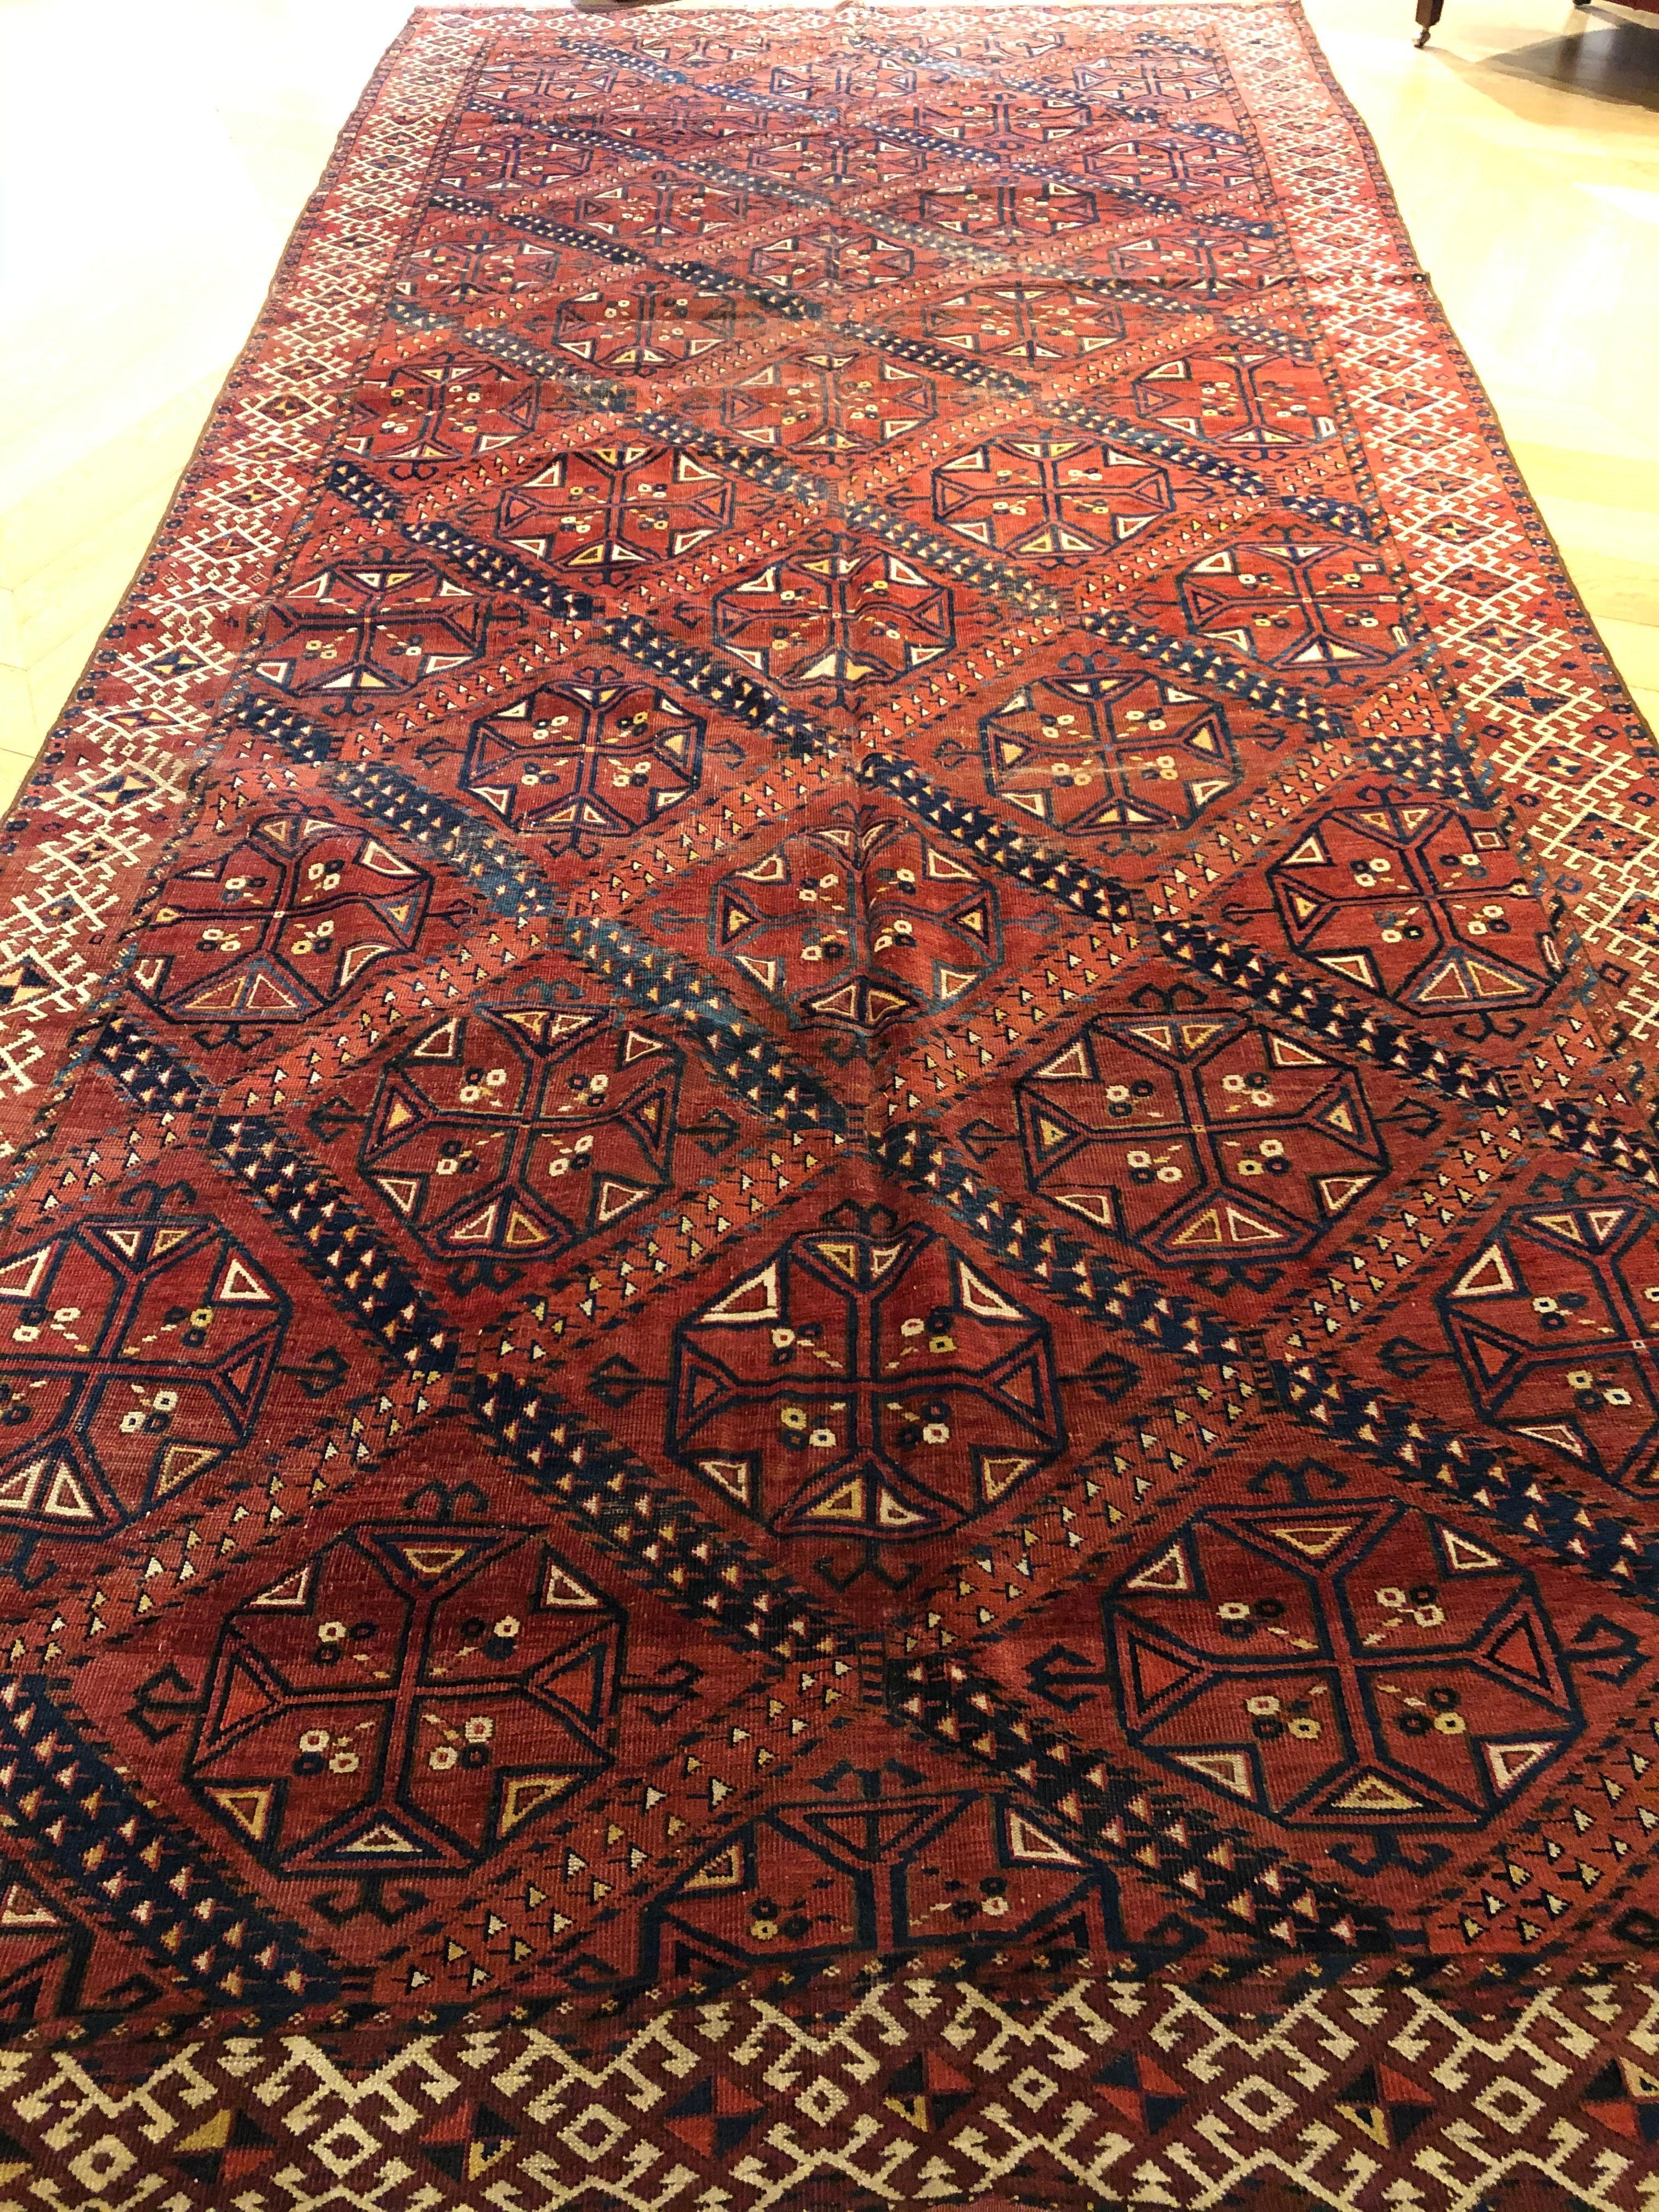 Antiker turkmenischer Teppich Erzari sec. XIX cm. Maße: 444 x 190 € 9,000
Die Ersari sind ein Volksstamm der Turkmenen in Zentralasien und einer der fünf Hauptstämme Turkmenistans. Die Tribu der Eersani, die zahlreichste unter den Turkmenen, hat